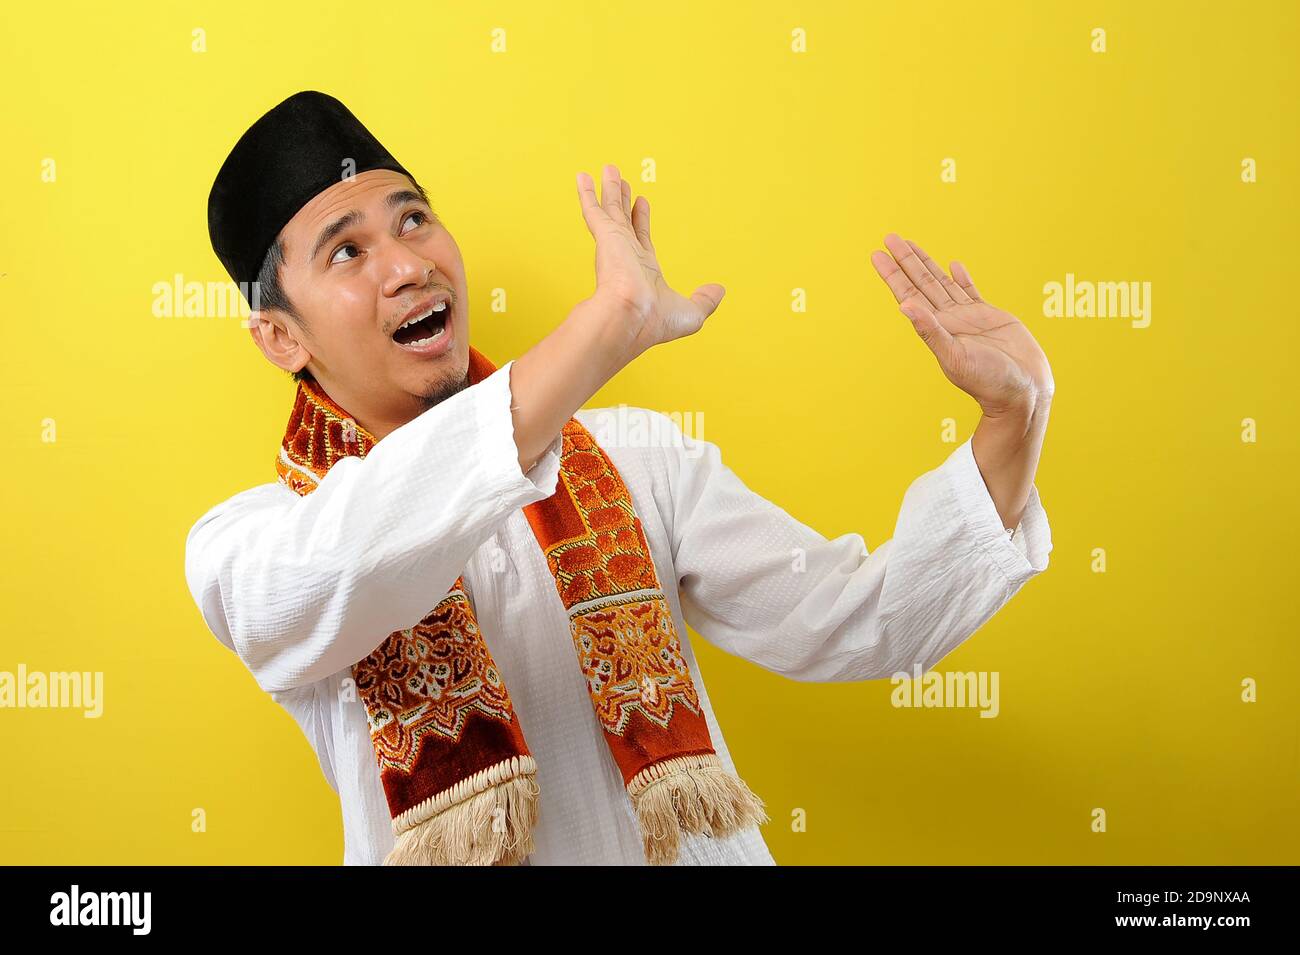 Ein bärtiger junger asiatischer Muslim, der sich mit ausgestreckten Händen vor etwas schützt, das von oben zu ihm kommt, isoliert auf gelbem Hintergrund Stockfoto